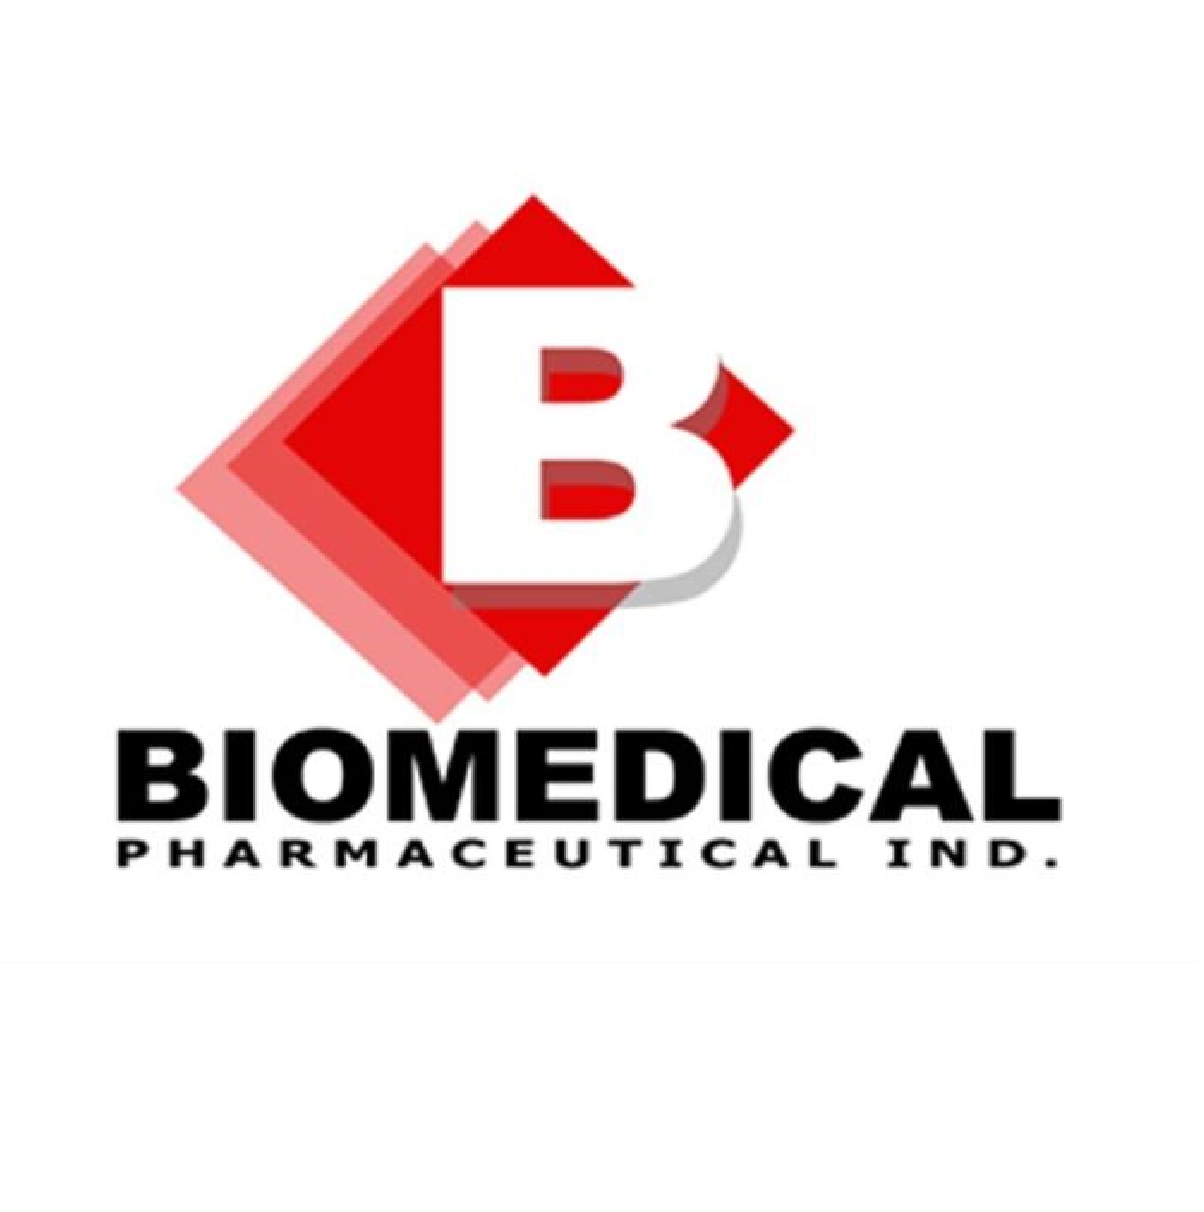 BioMedical Pharma